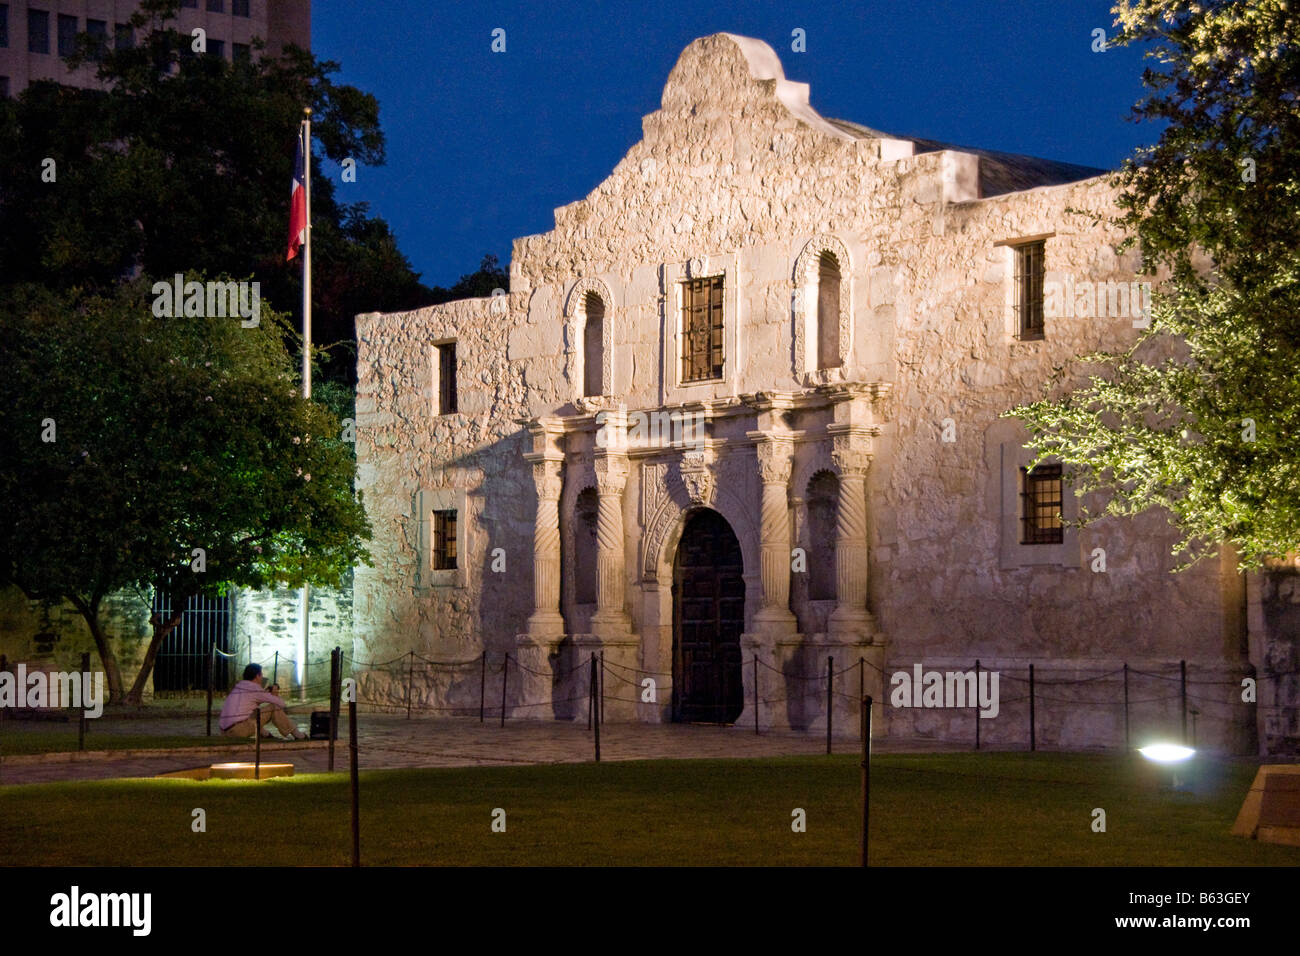 Missions de San Antonio, l'Alamo (AKA Mission San Antonio de Valero), State Historic Site de nuit Banque D'Images